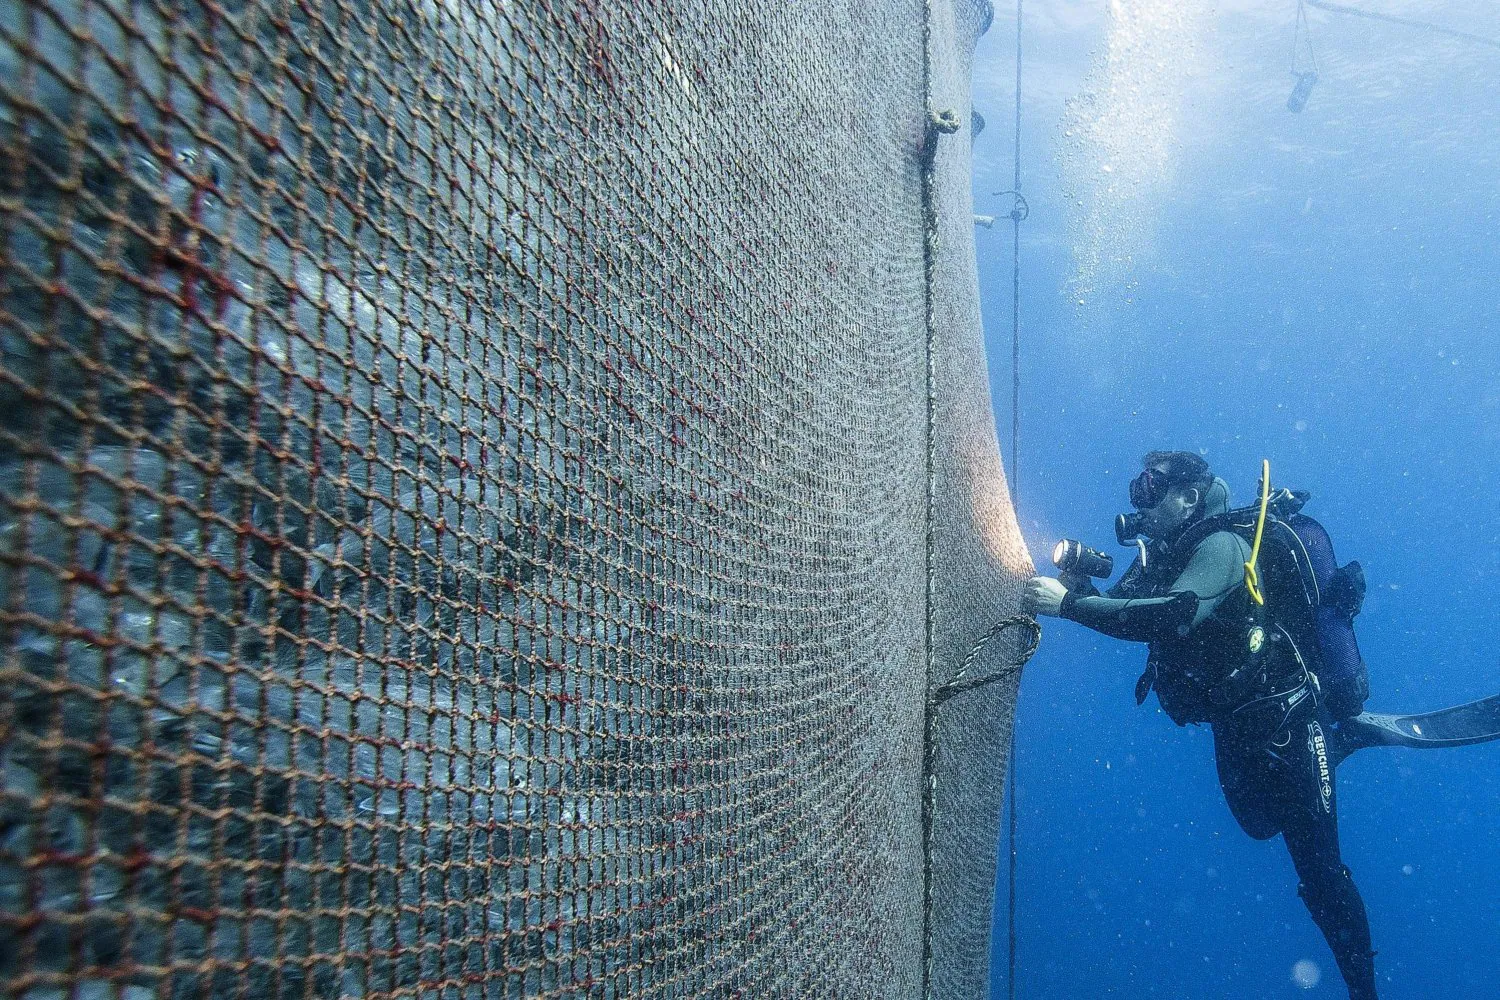 Un buzo revisa una enorme red que contiene cientos de peces en una granja acuícola frente a la costa de Ajaccio, Córcega